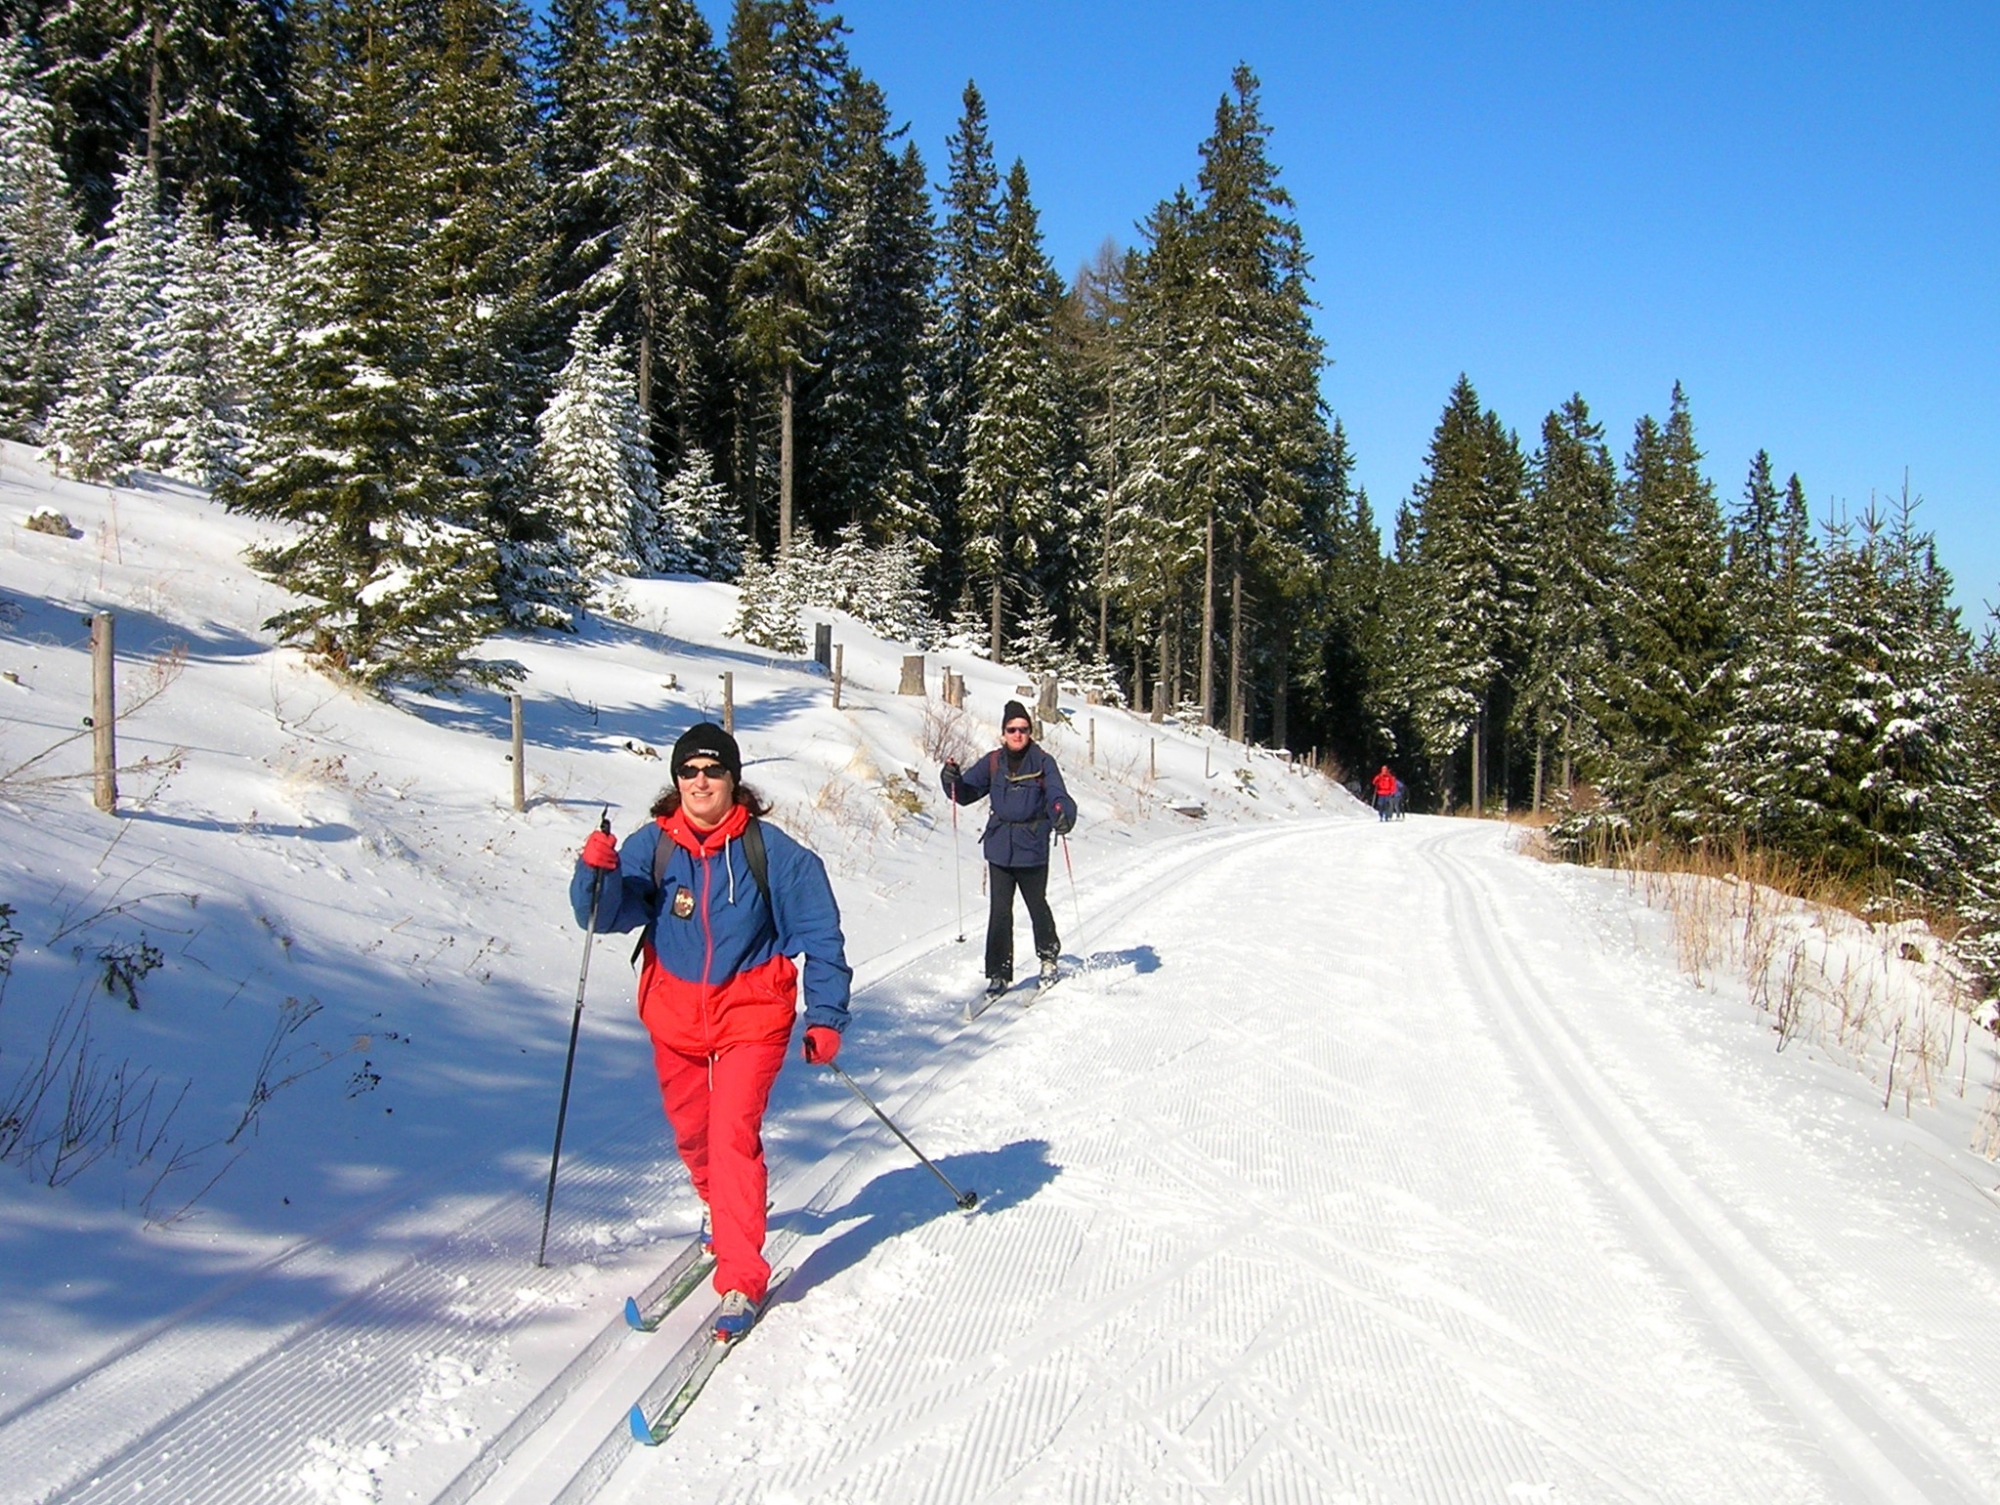 Les aînés peuvent pratiquer le ski de fond en toute sécurité, chacun pouvant cheminer à son rythme lors de sorties encadrées par un moniteur.